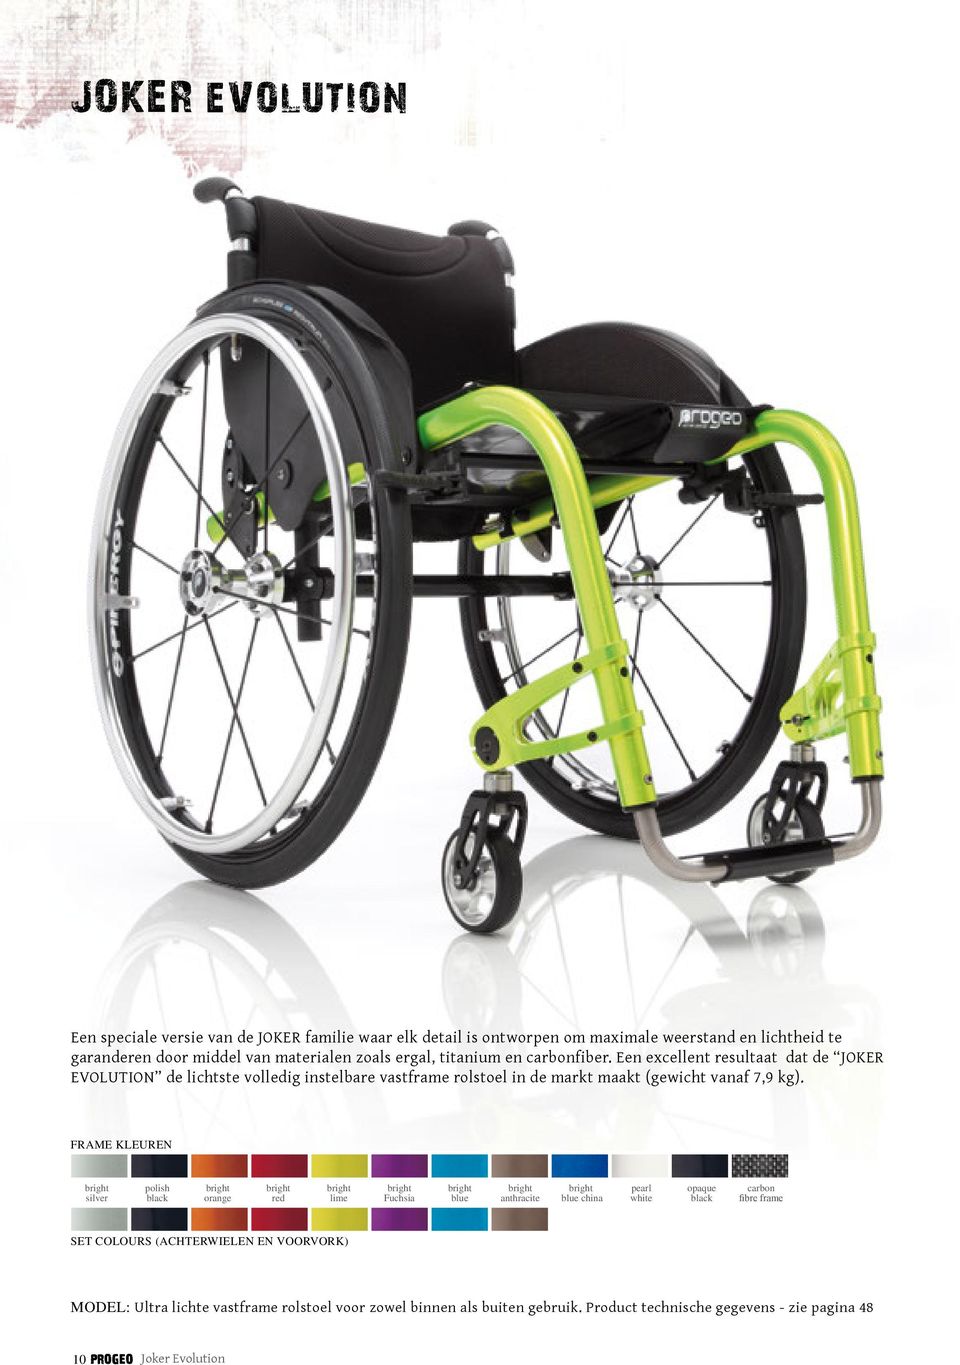 Een excellent resultaat dat de JOKER EVOLUTION de lichtste volledig instelbare vastframe rolstoel in de markt maakt (gewicht vanaf 7,9 kg).